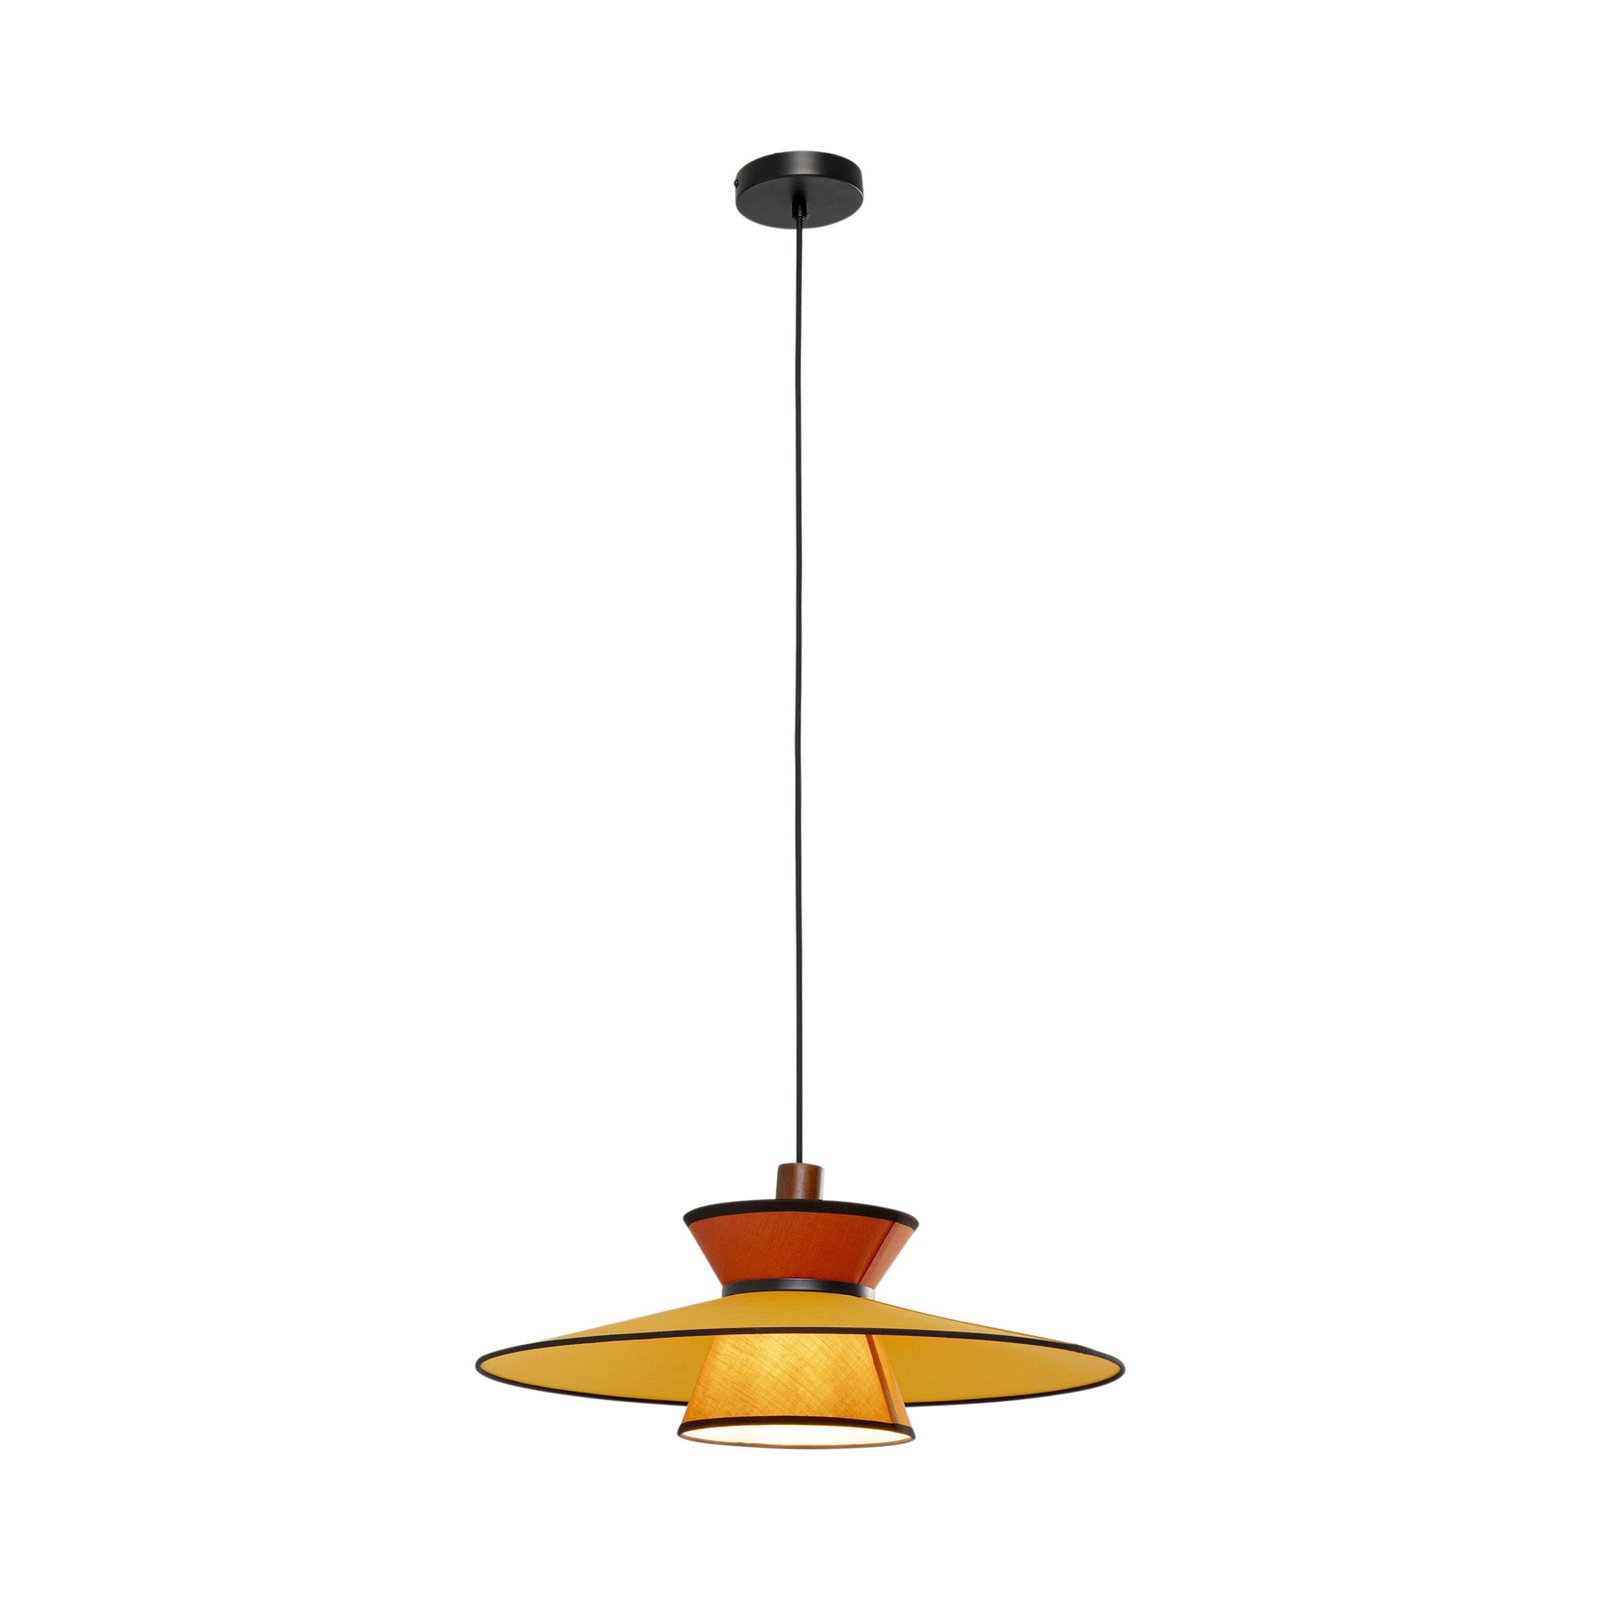 Kare hanglamp Riva, meerkleurig, textiel, hout, Ø 55 cm